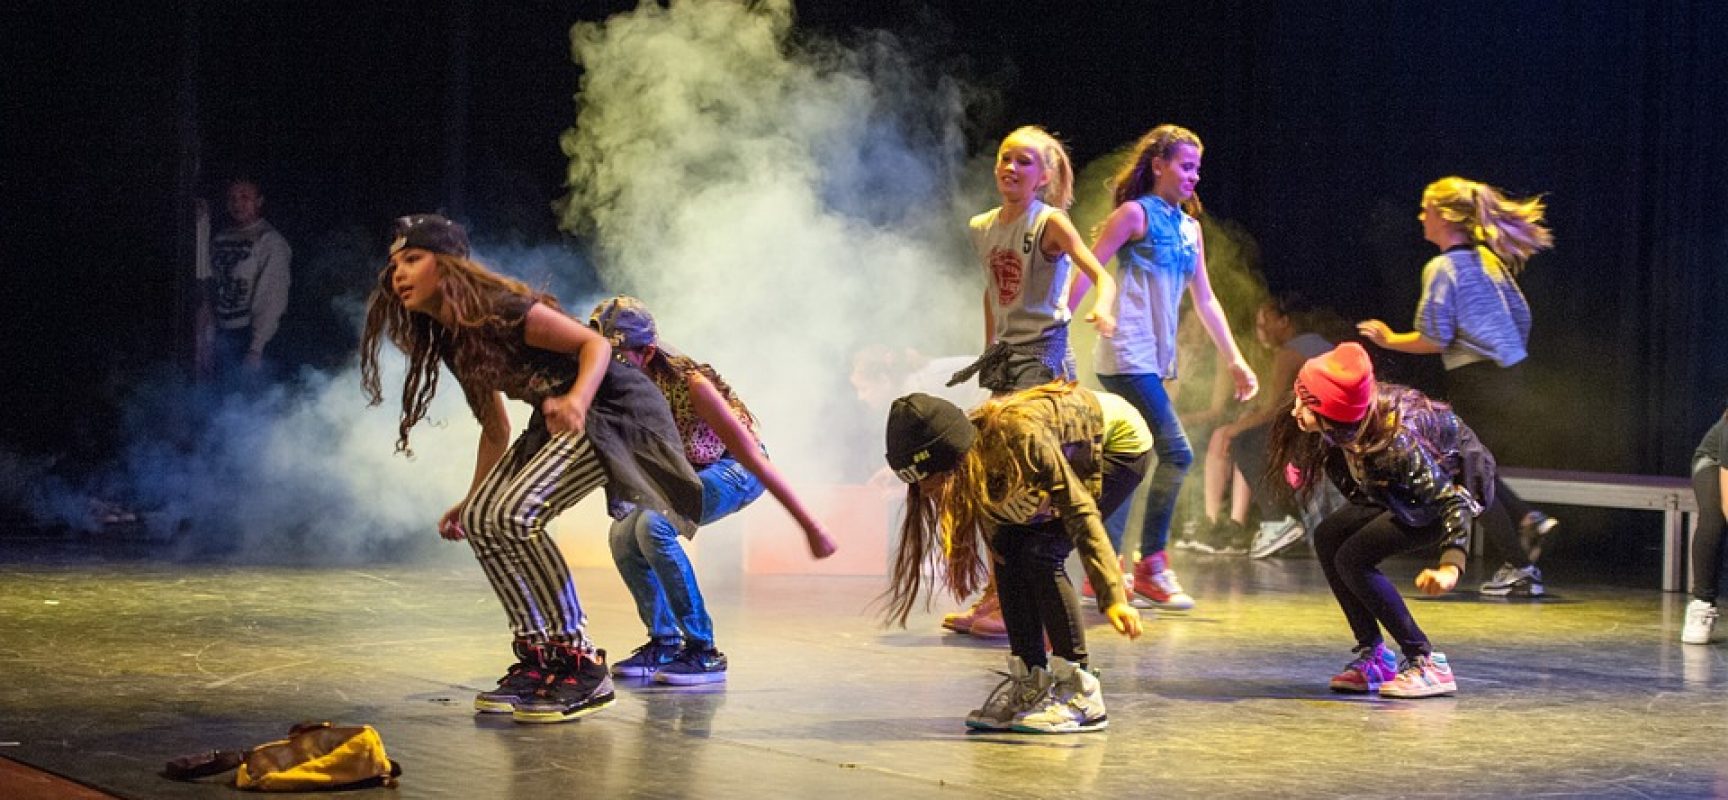 Secretaria da Cultura de Ilhéus lança projeto “Vem Dançar Verão 2019”